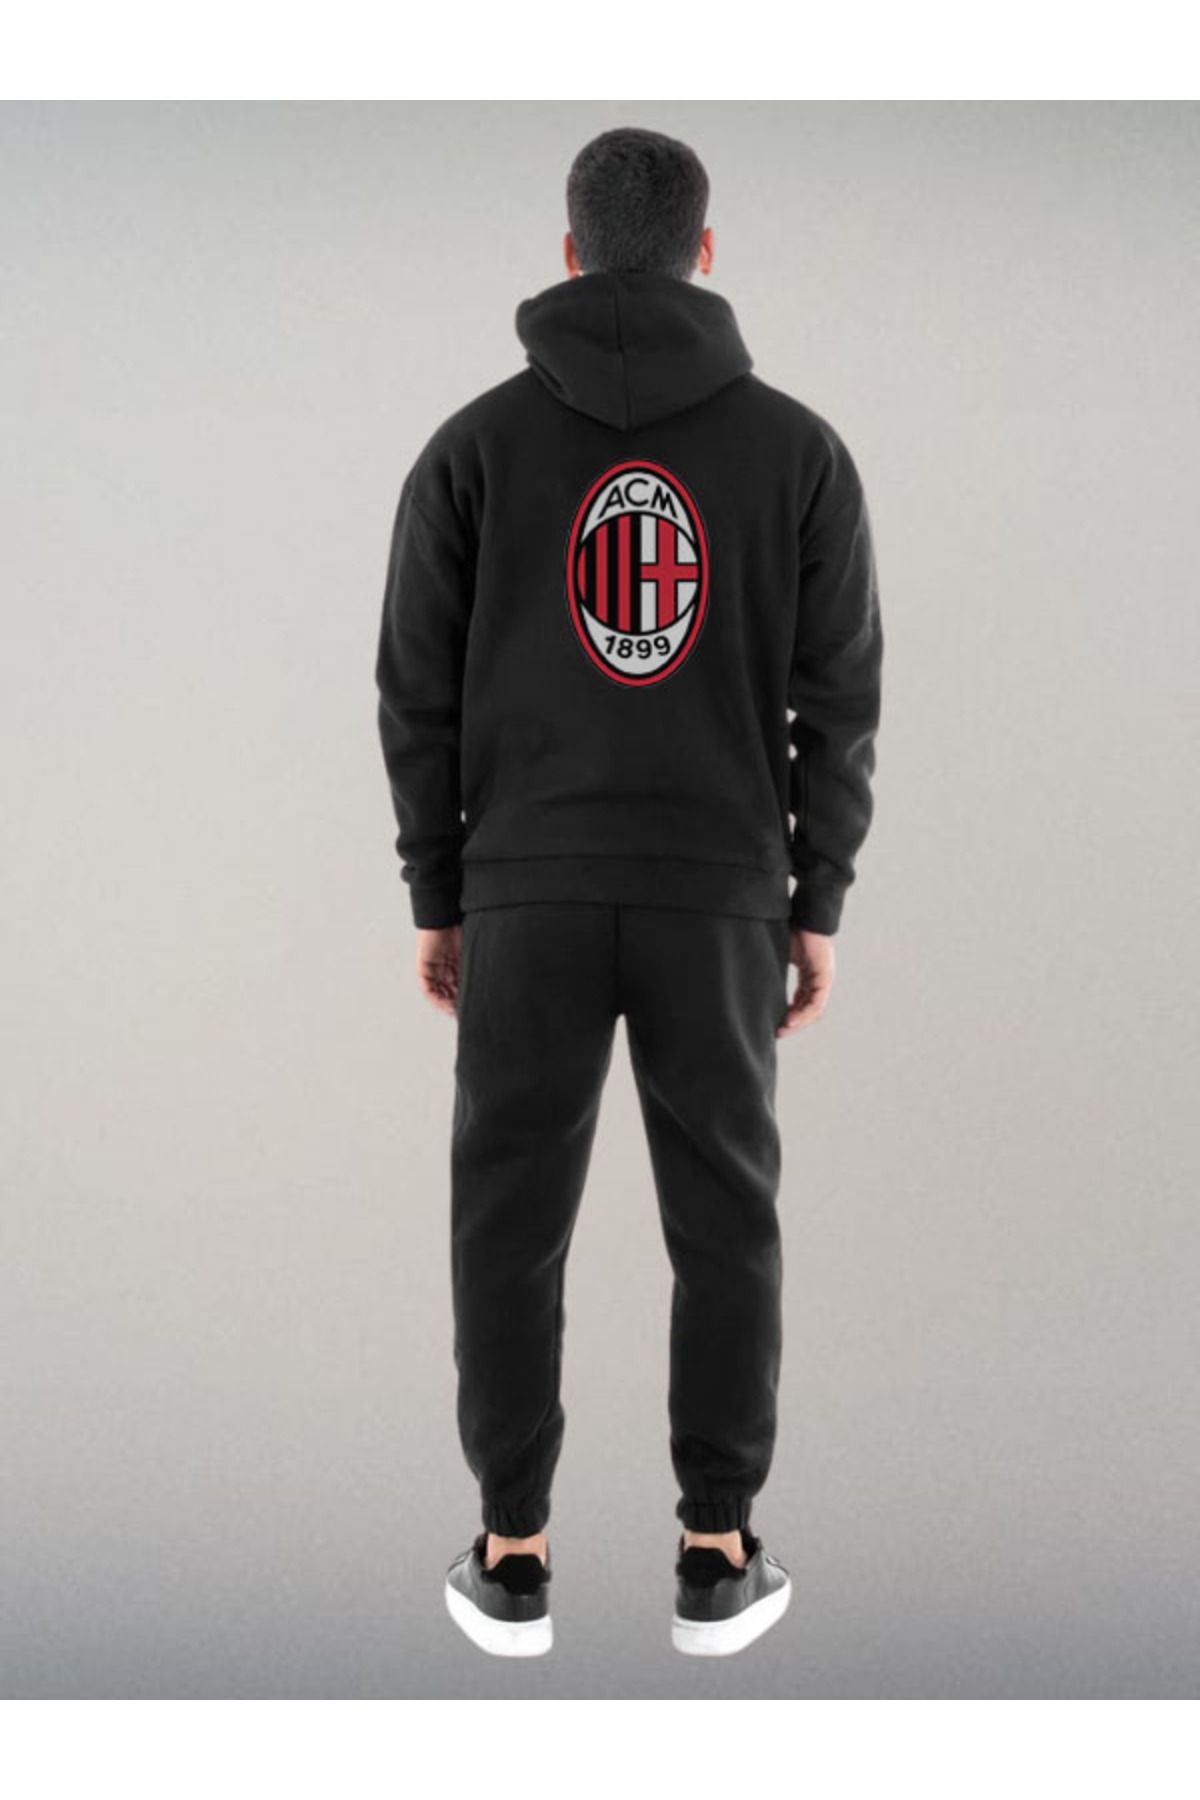 Darkia Ac Milan Futbol Takımı Özel Tasarım Baskılı Kapşonlu Sweatshirt Hoodie Spor Eşofman Takımı